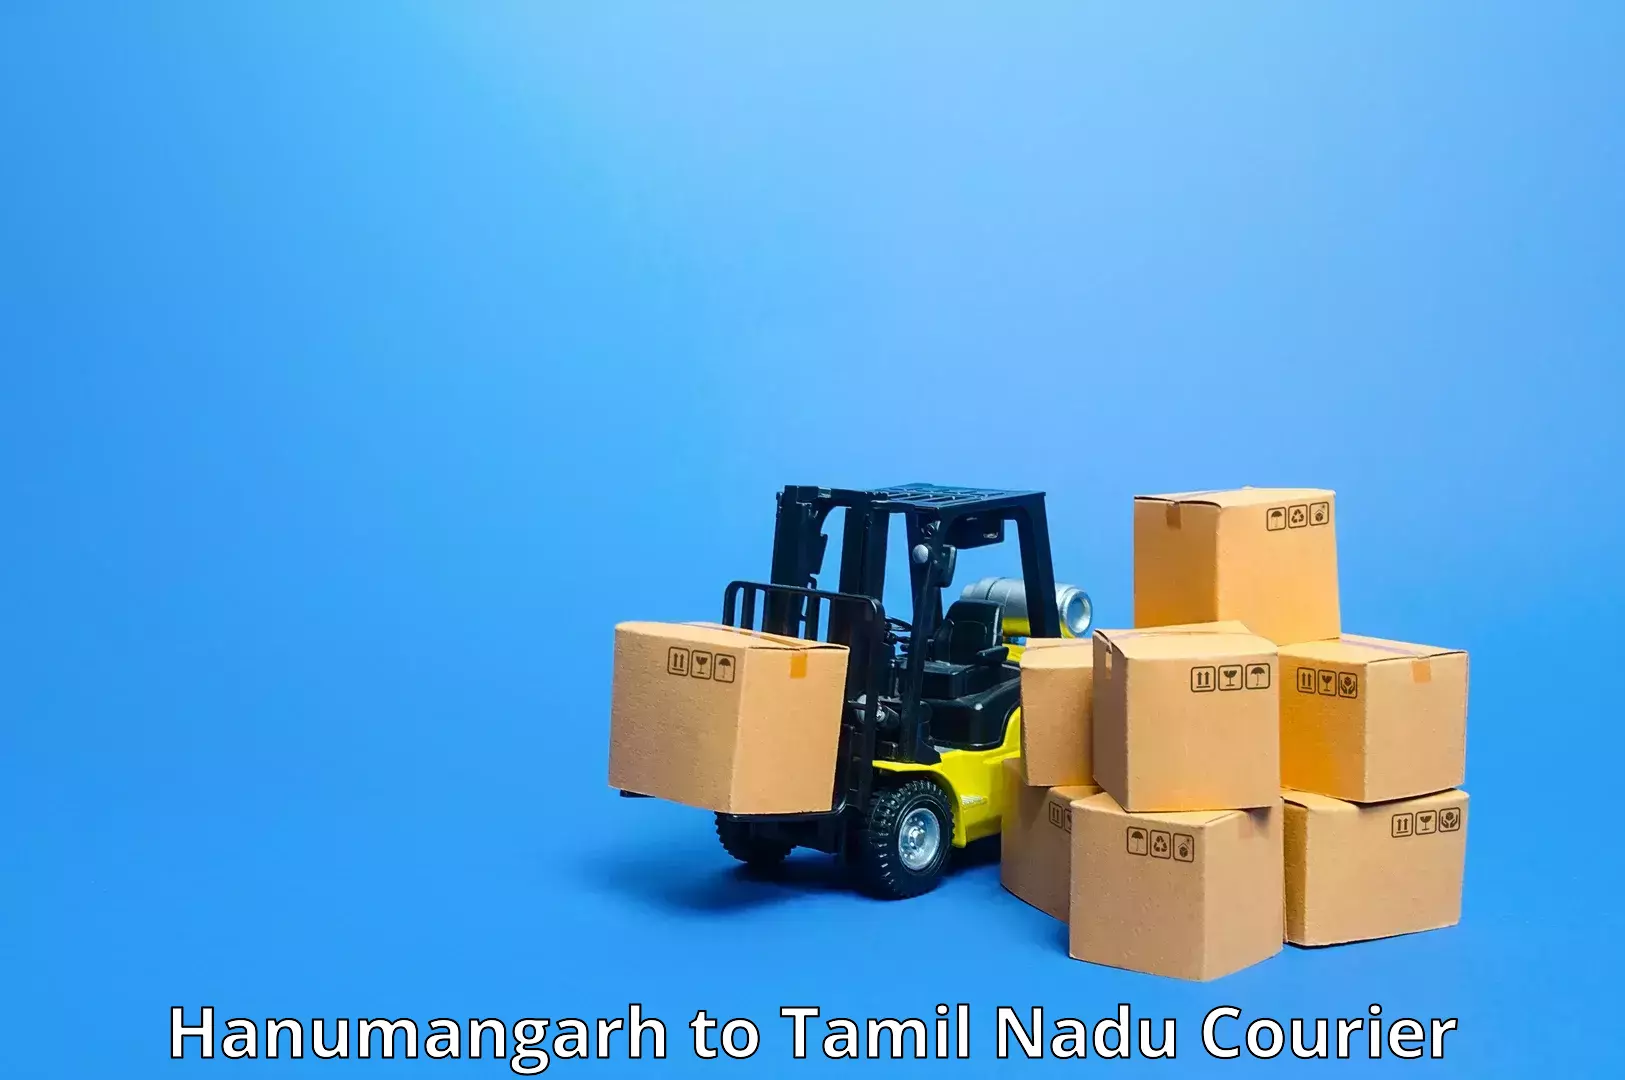 Comprehensive parcel tracking Hanumangarh to Hosur